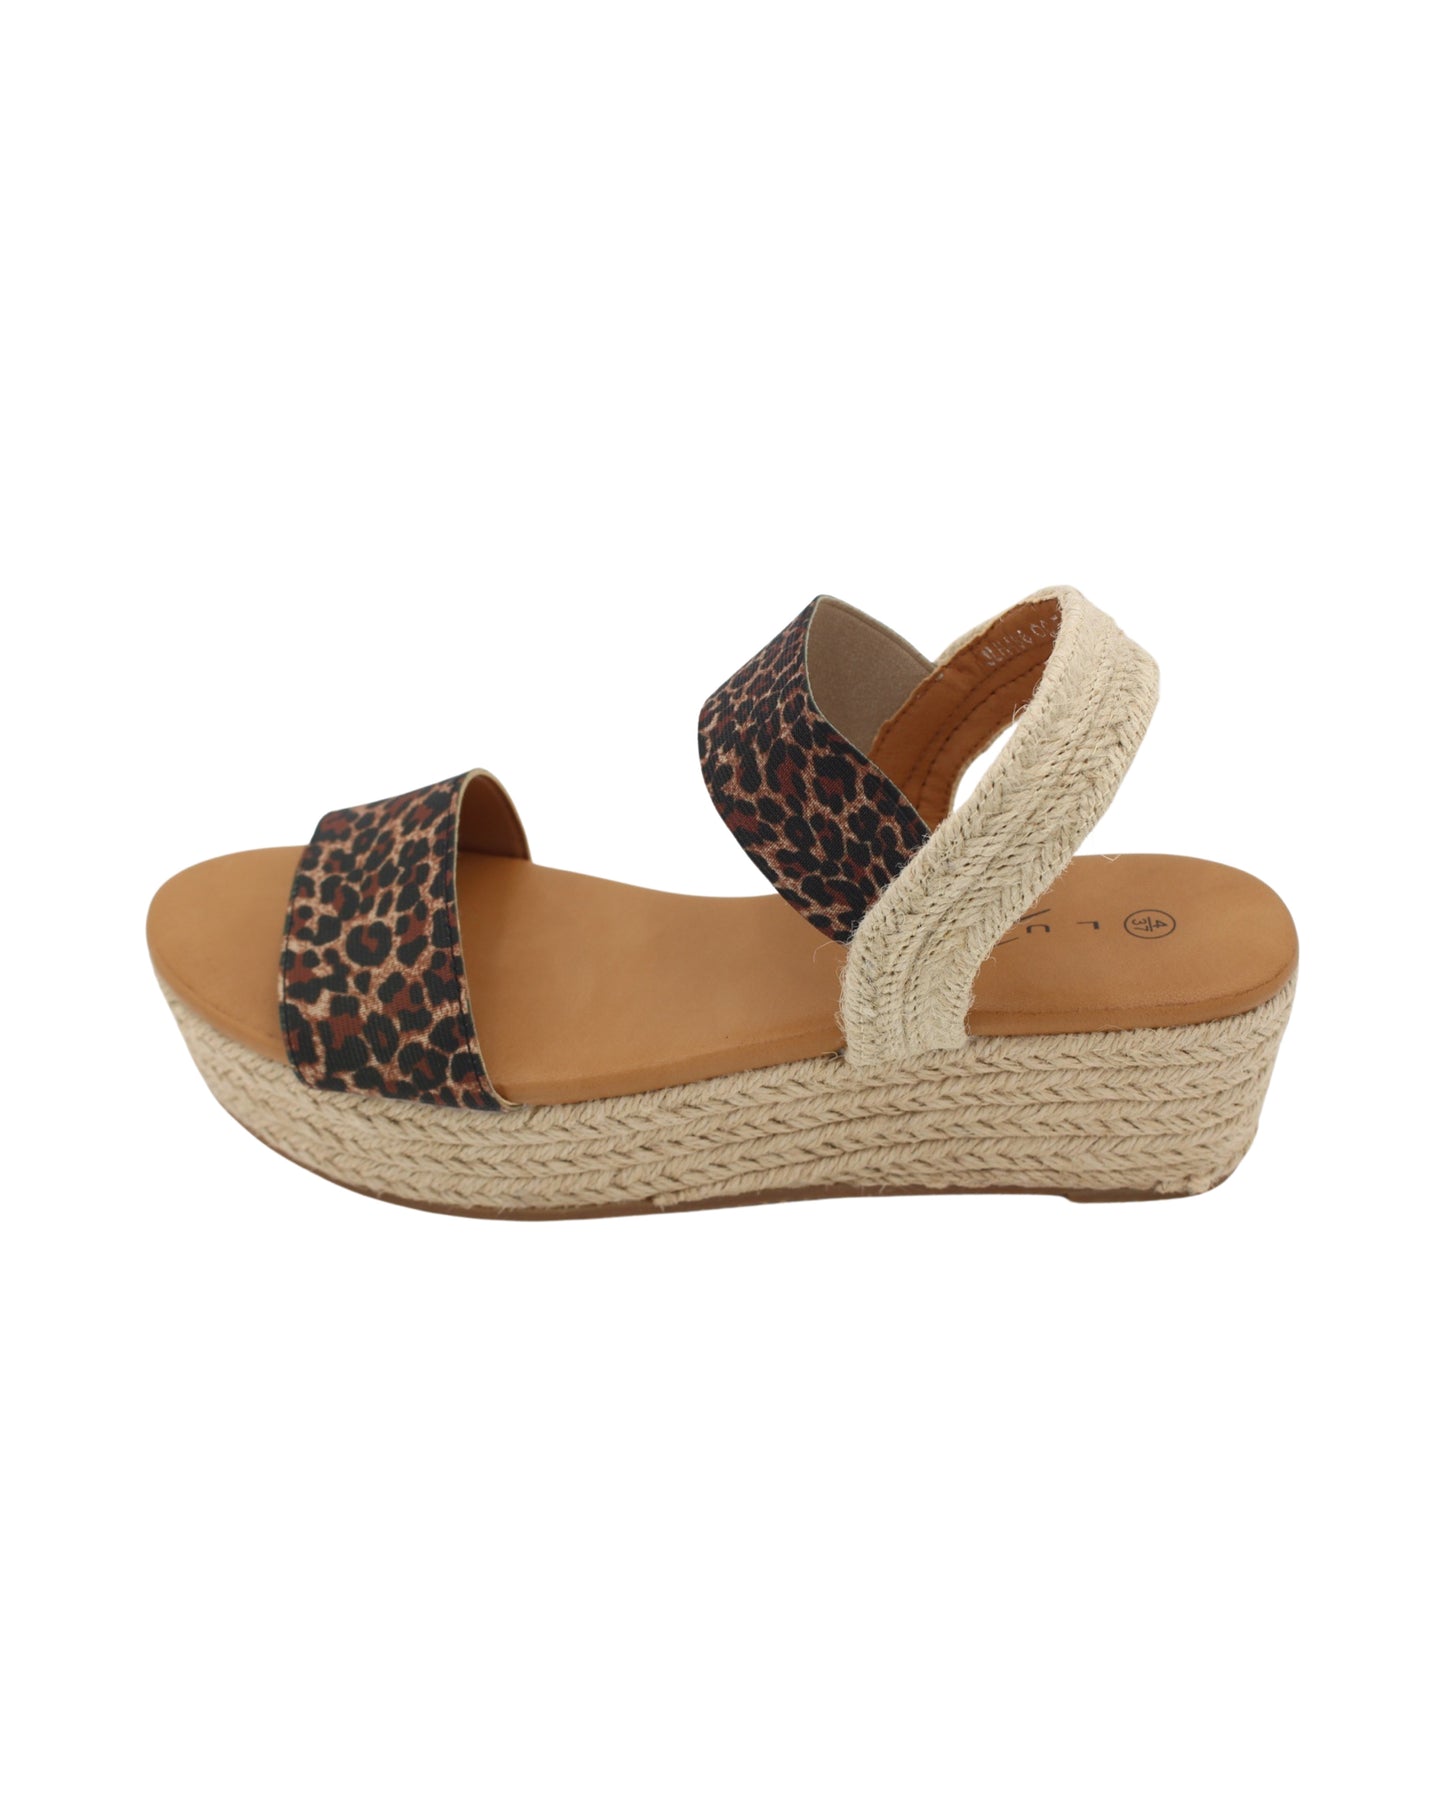 Lunar - Ladies Shoes Sandals Leopard (2284)